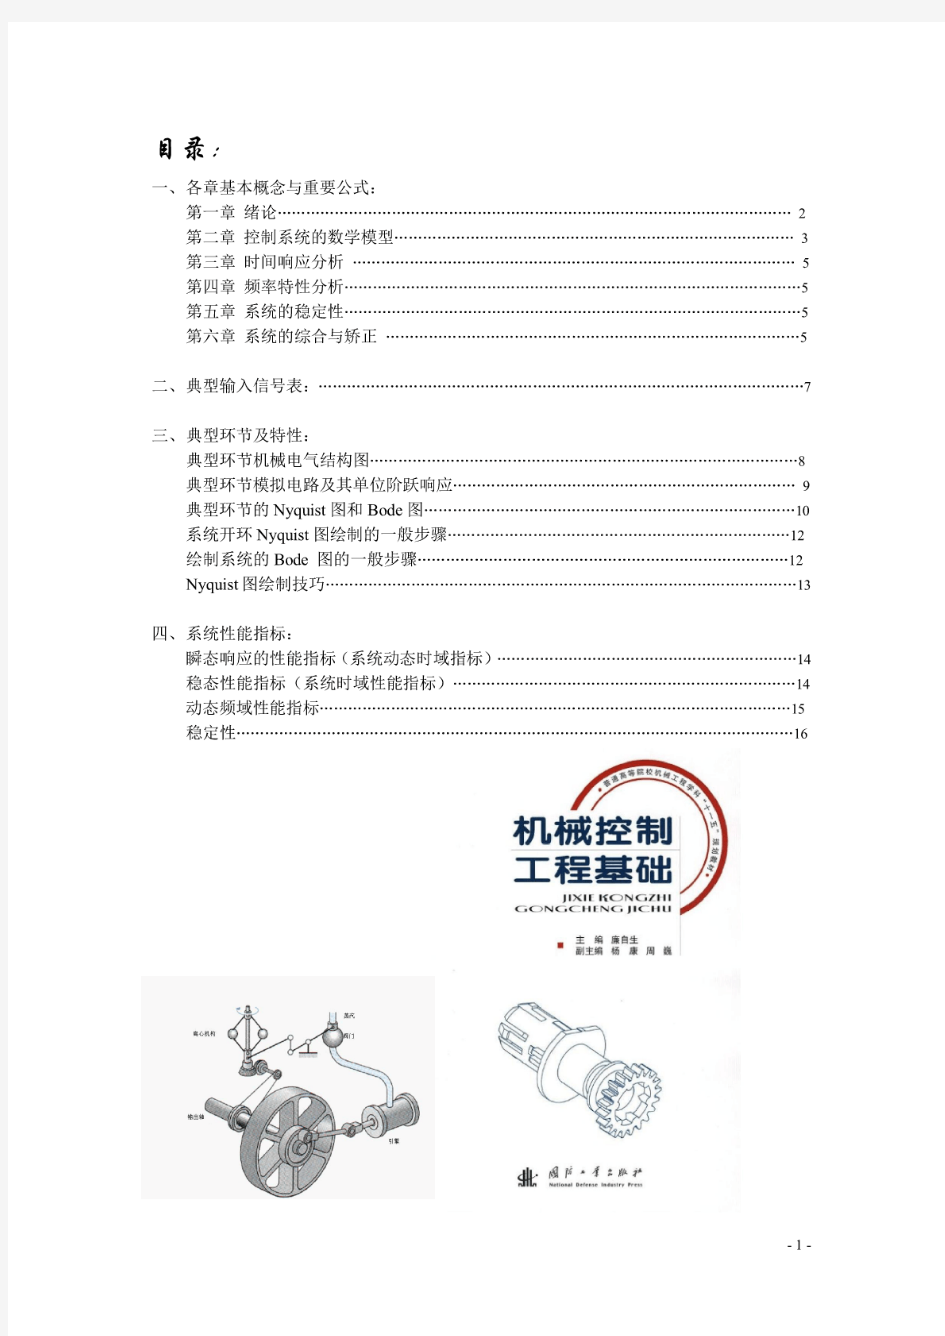 机械控制工程基础知识总结.pdf